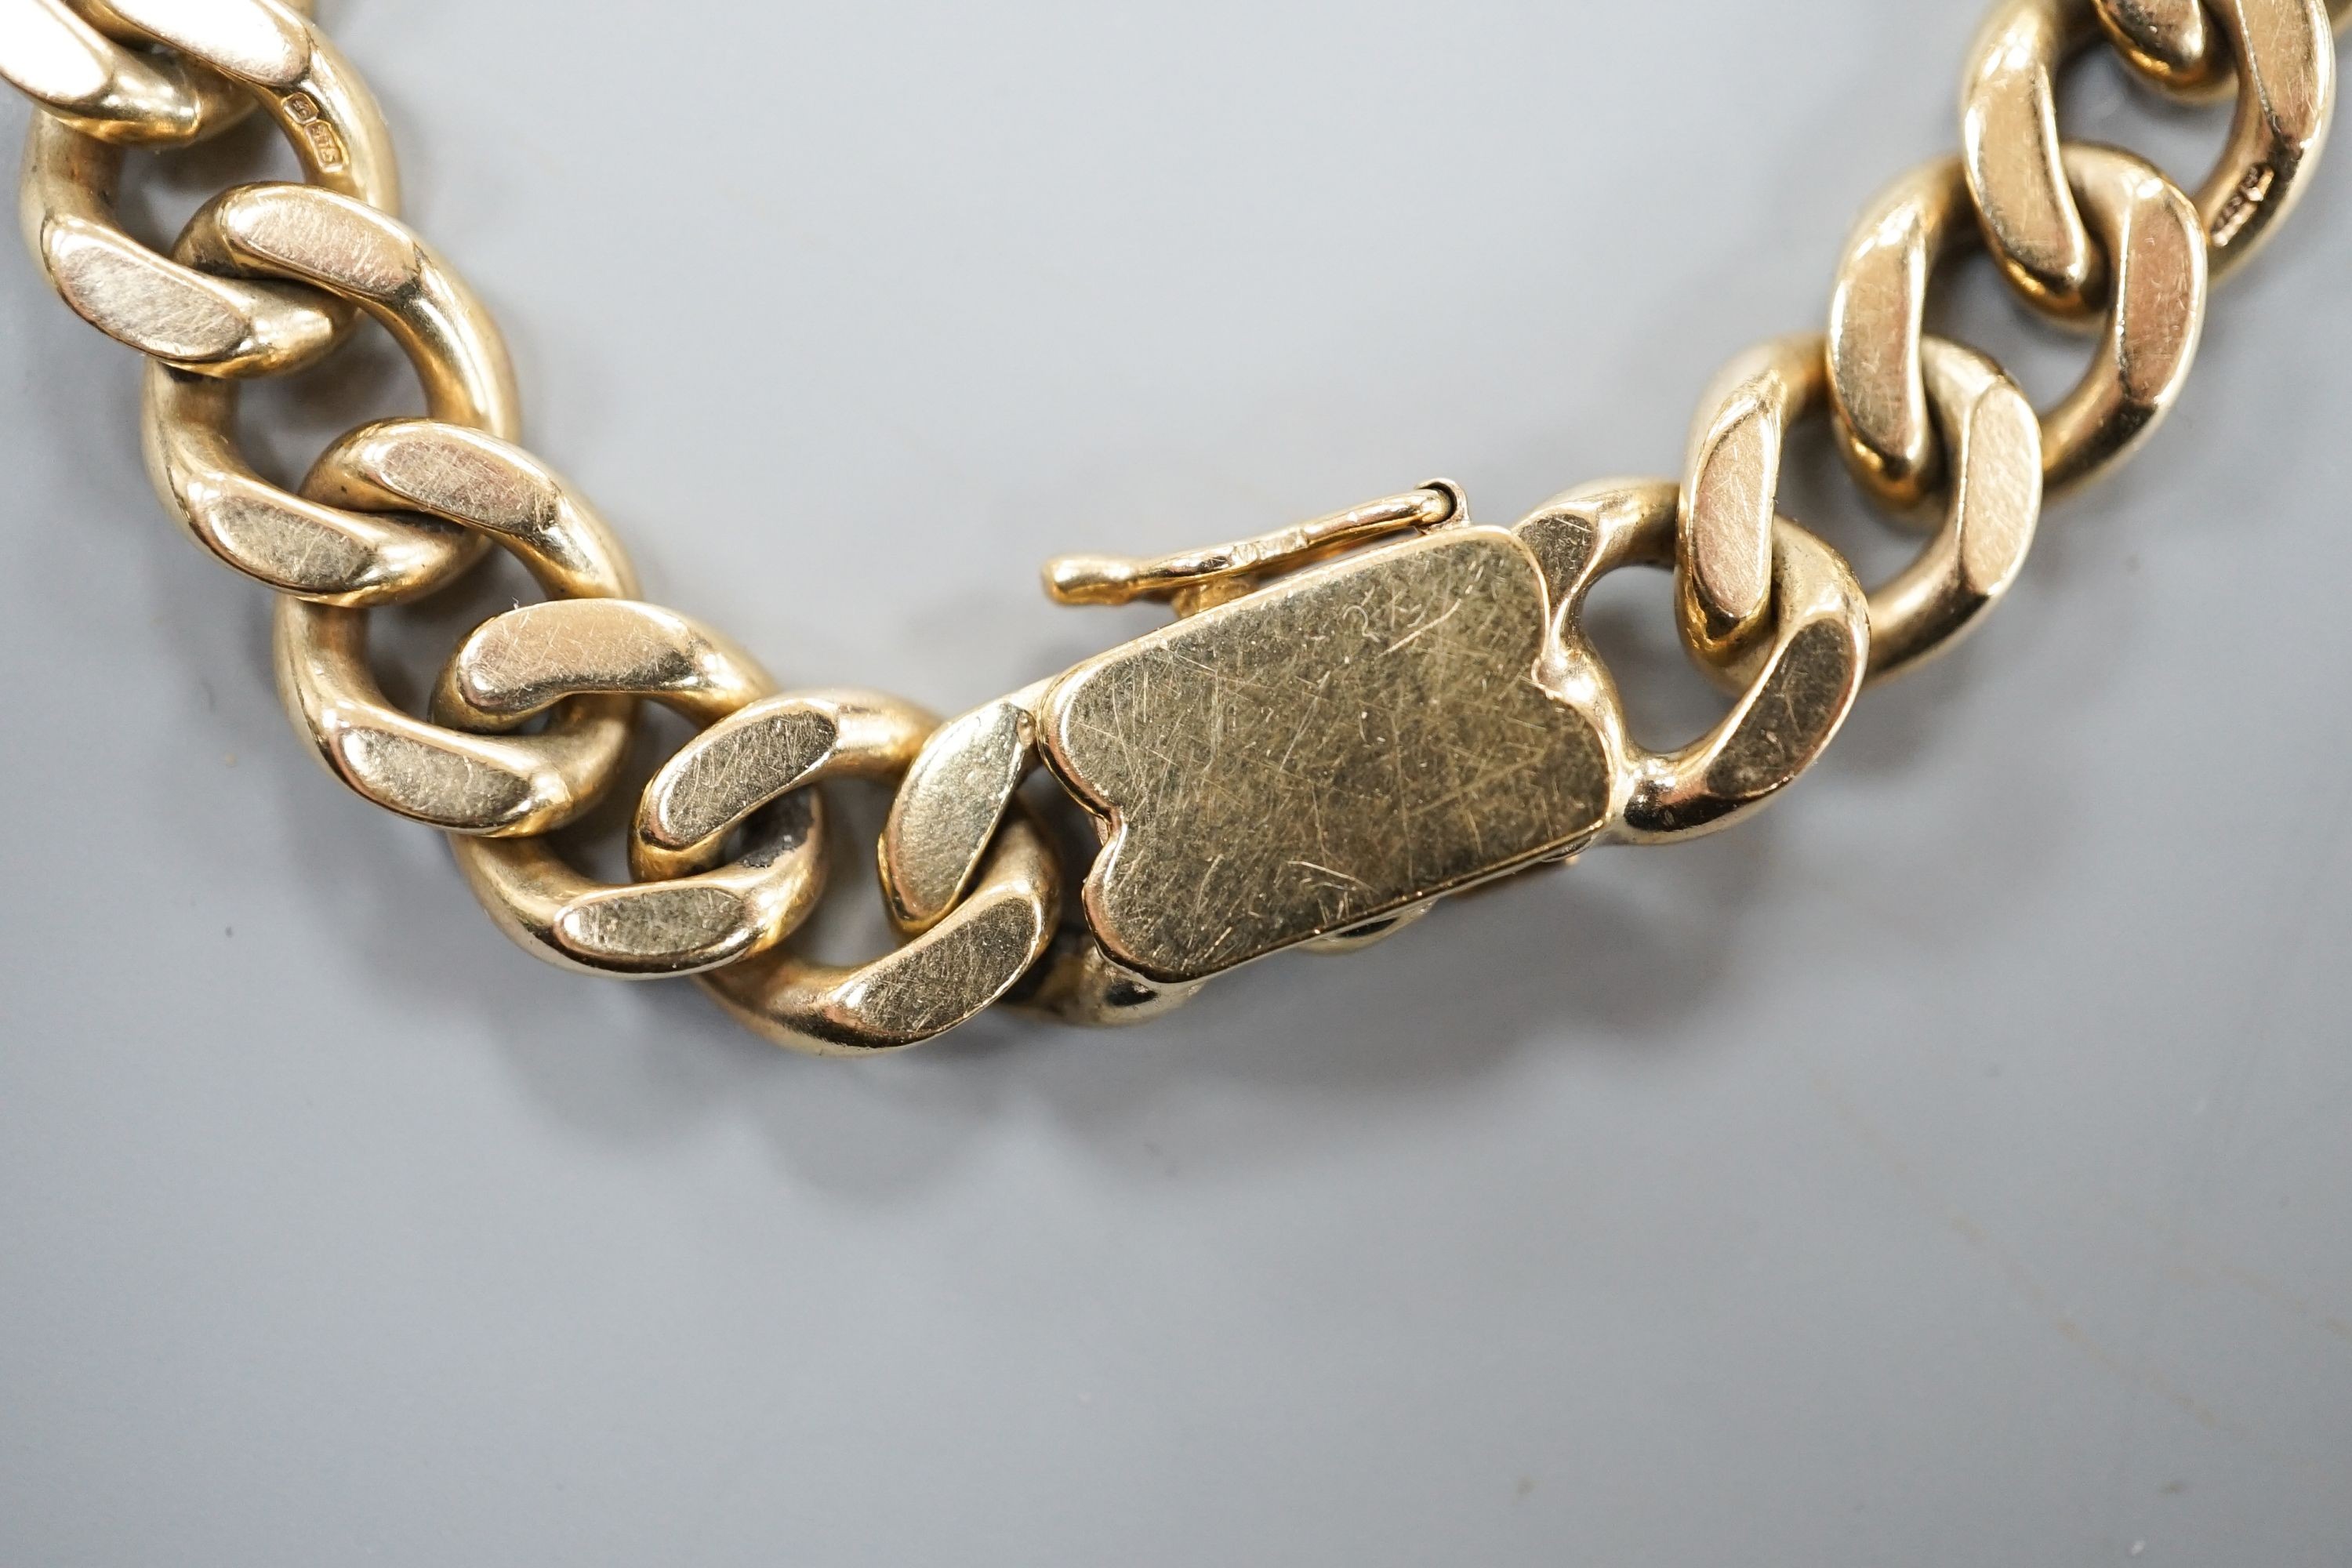 A 9ct curb link bracelet, 17.7cm, 33.4 grams.